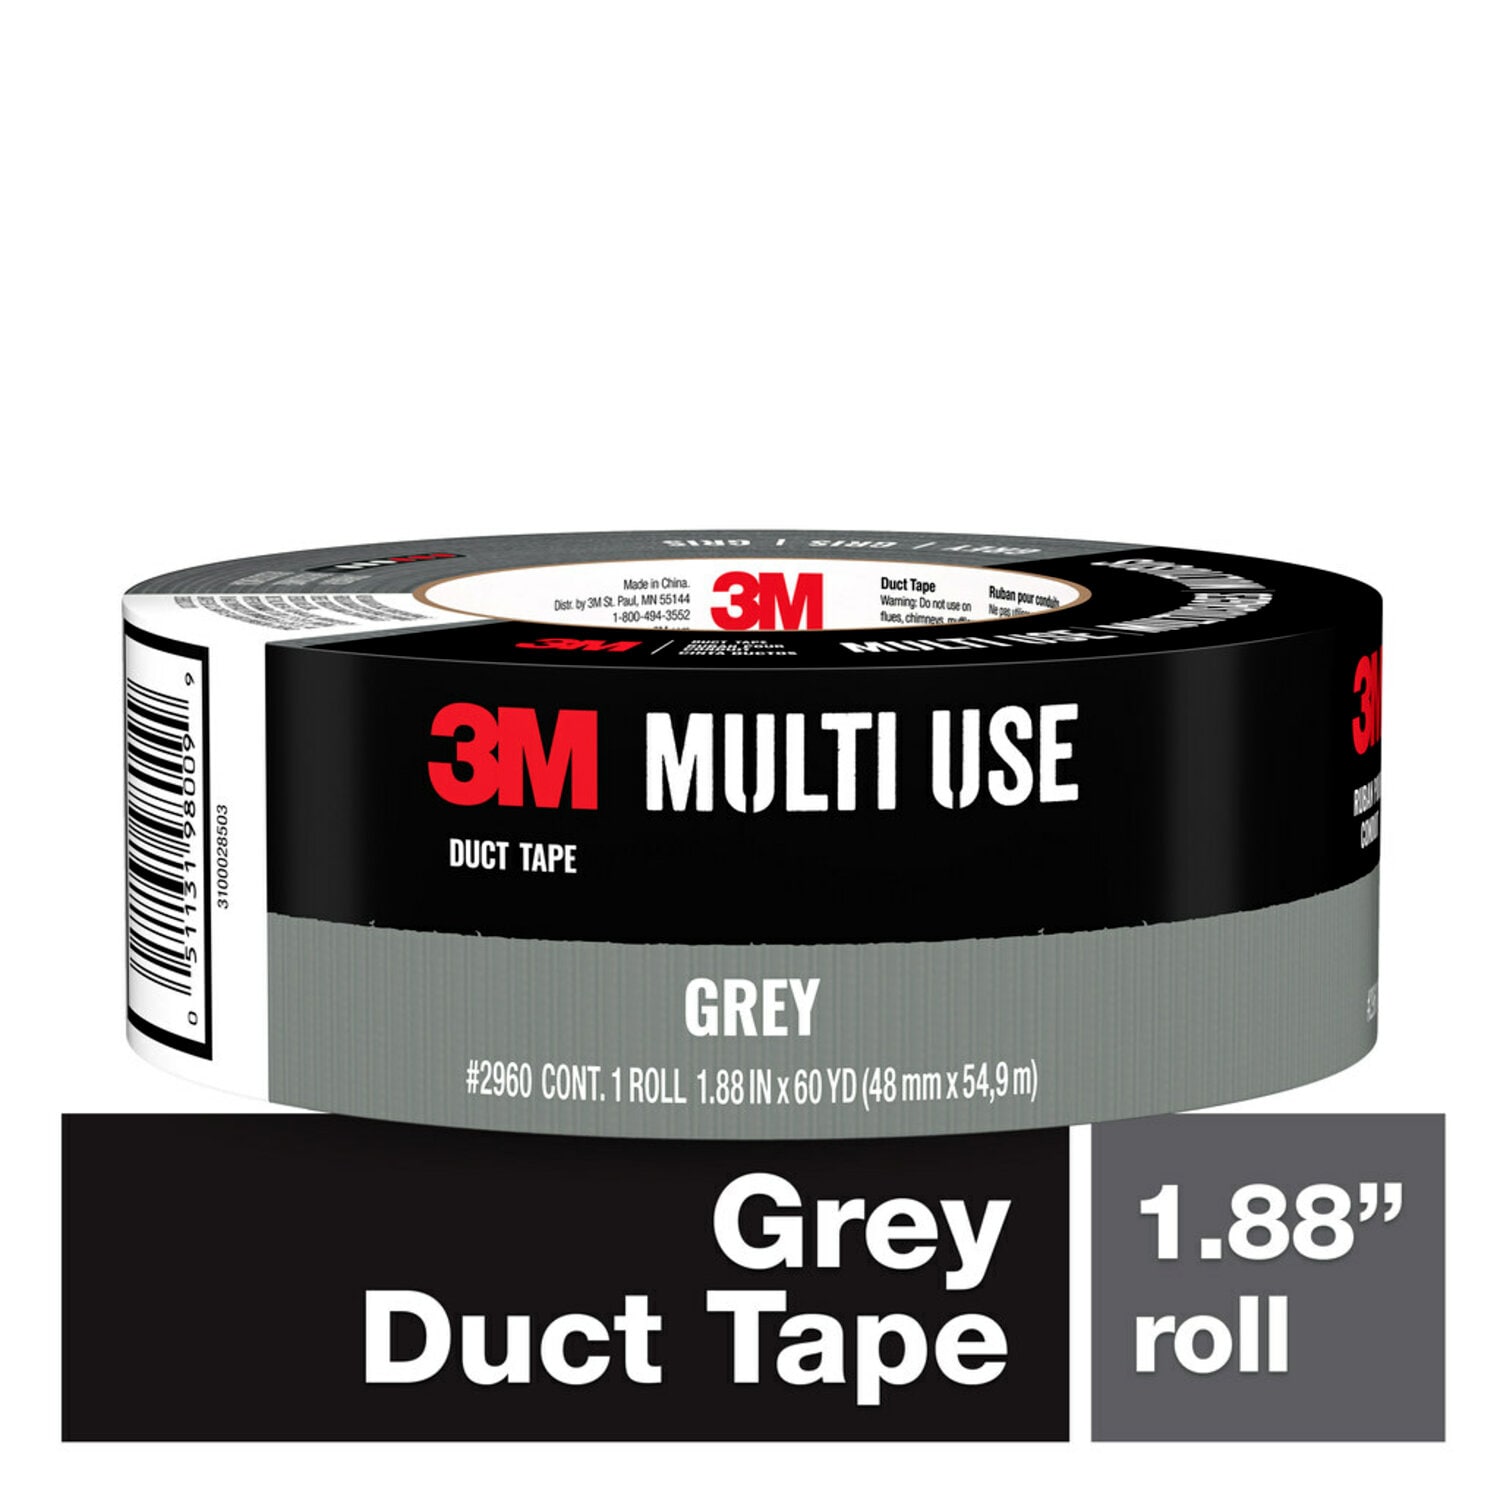 7100214360 - 3M Multi-Use Duct Tape 2960-A 1.88 in x 60 yd (48.0 mm x 54.8 m) 24 rls/cs